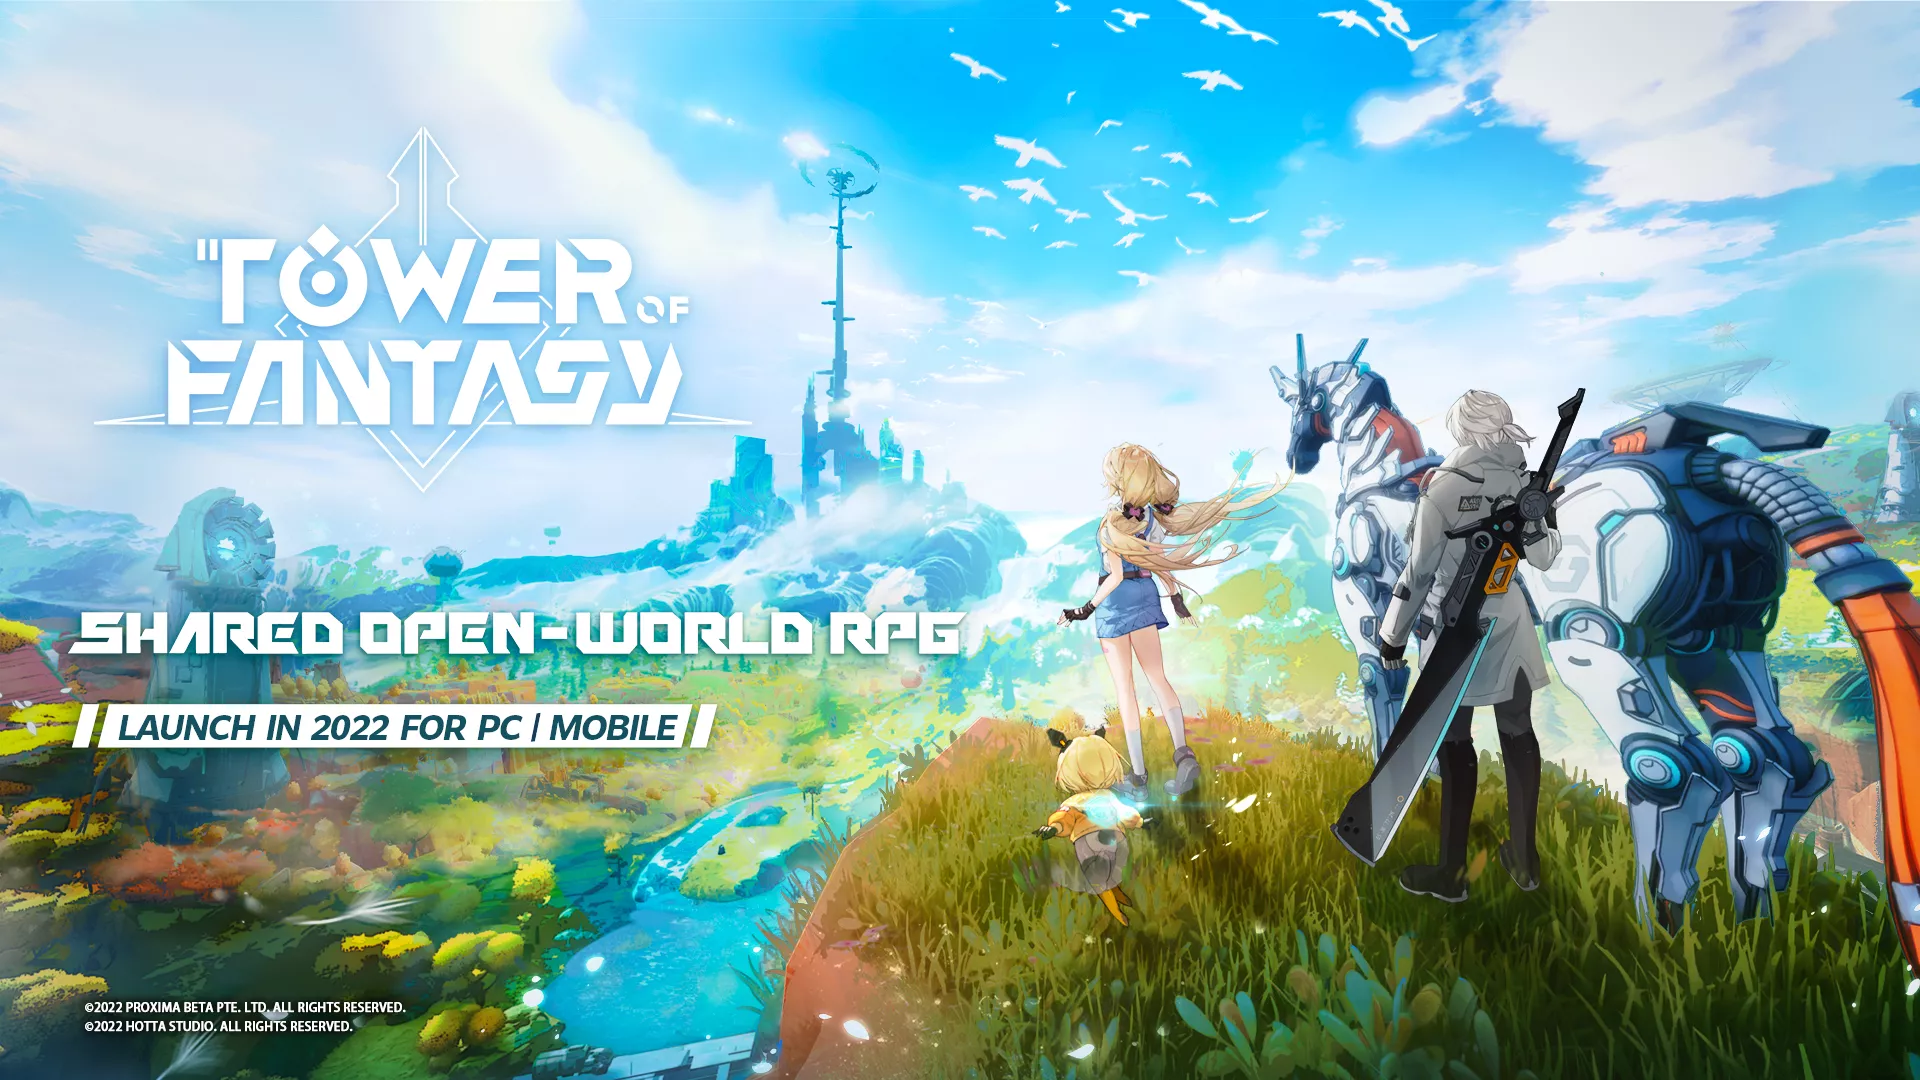 Tower of Fantasy: Das nächste Action-MMO aus China für PC und Mobile Heropic